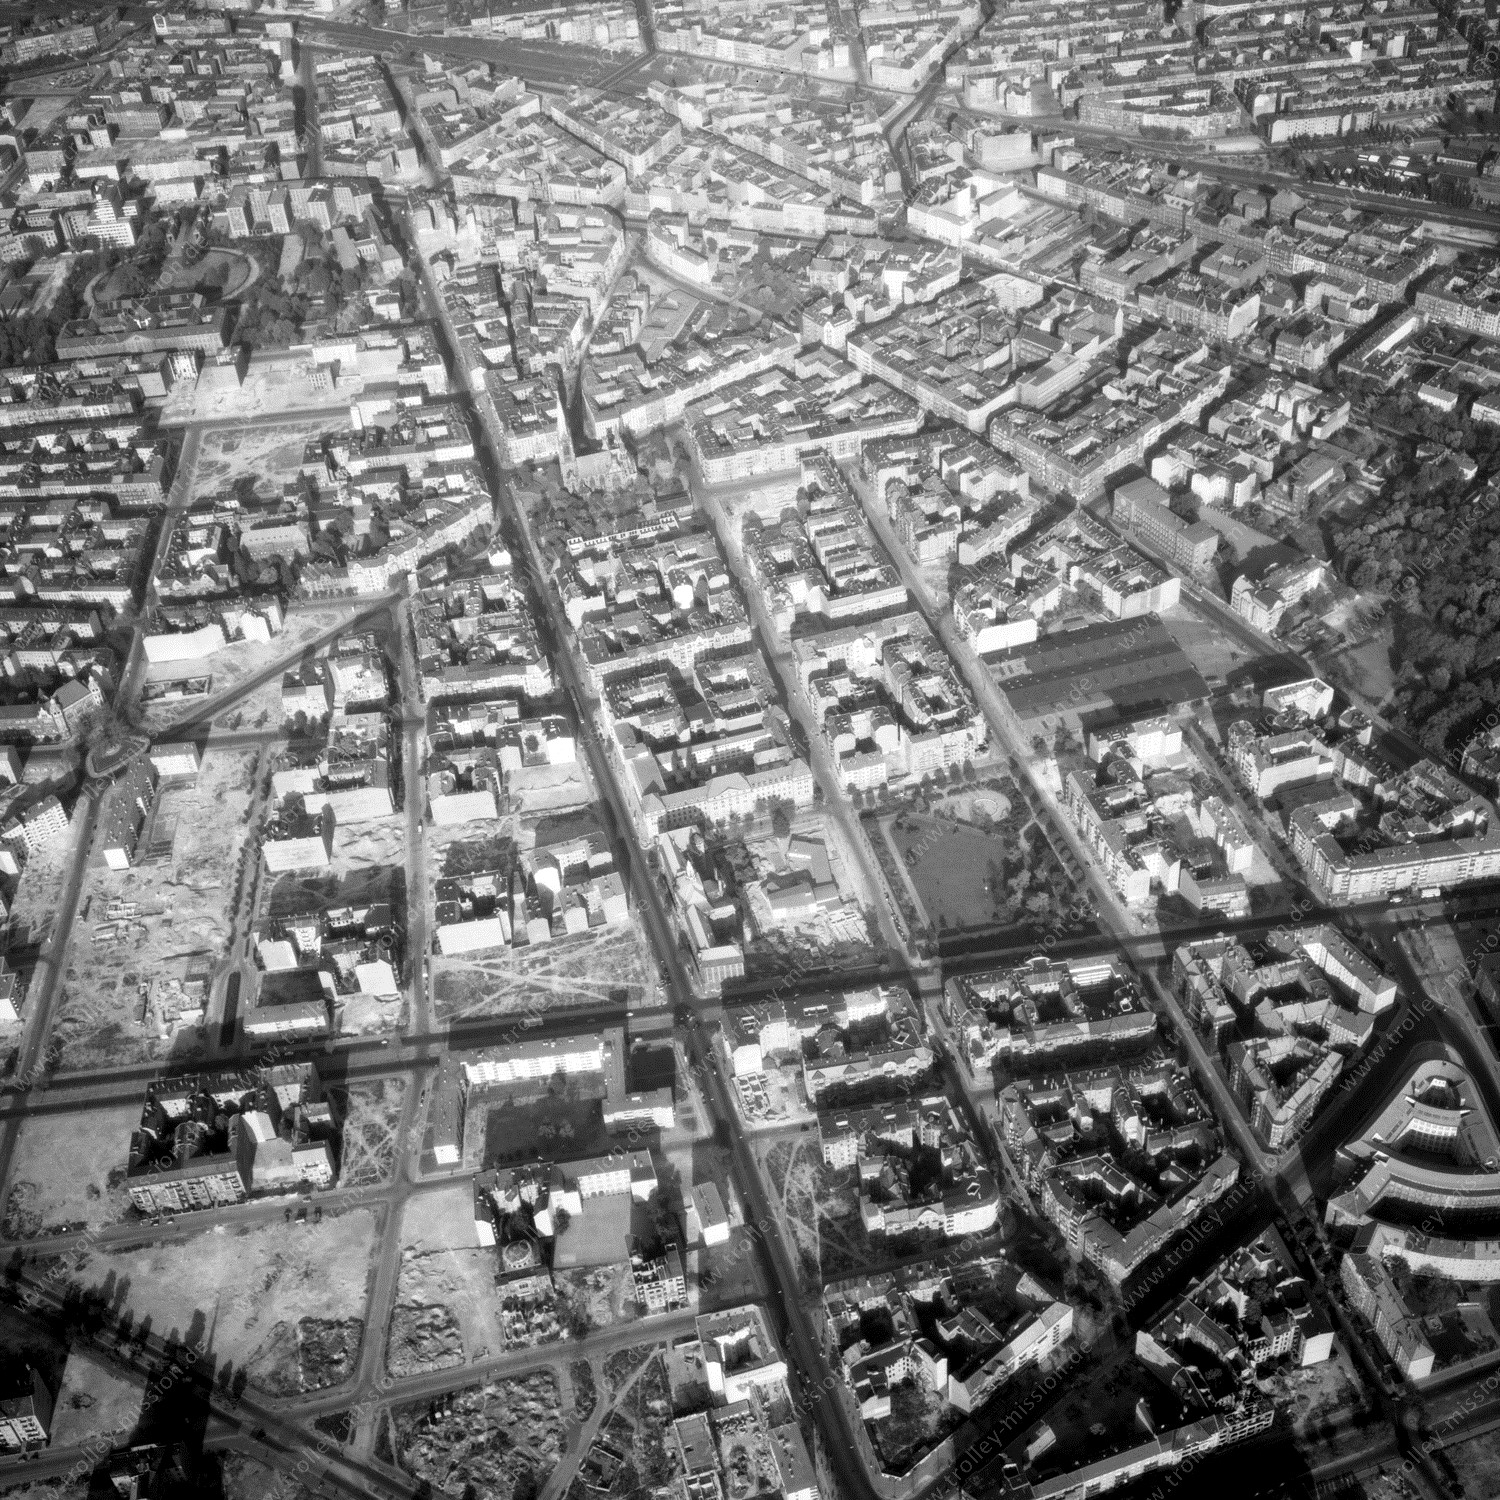 Alte Fotos und Luftbilder von Berlin - Luftbildaufnahme Nr. 03 - Historische Luftaufnahmen von West-Berlin aus dem Jahr 1954 - Flugstrecke Foxtrot